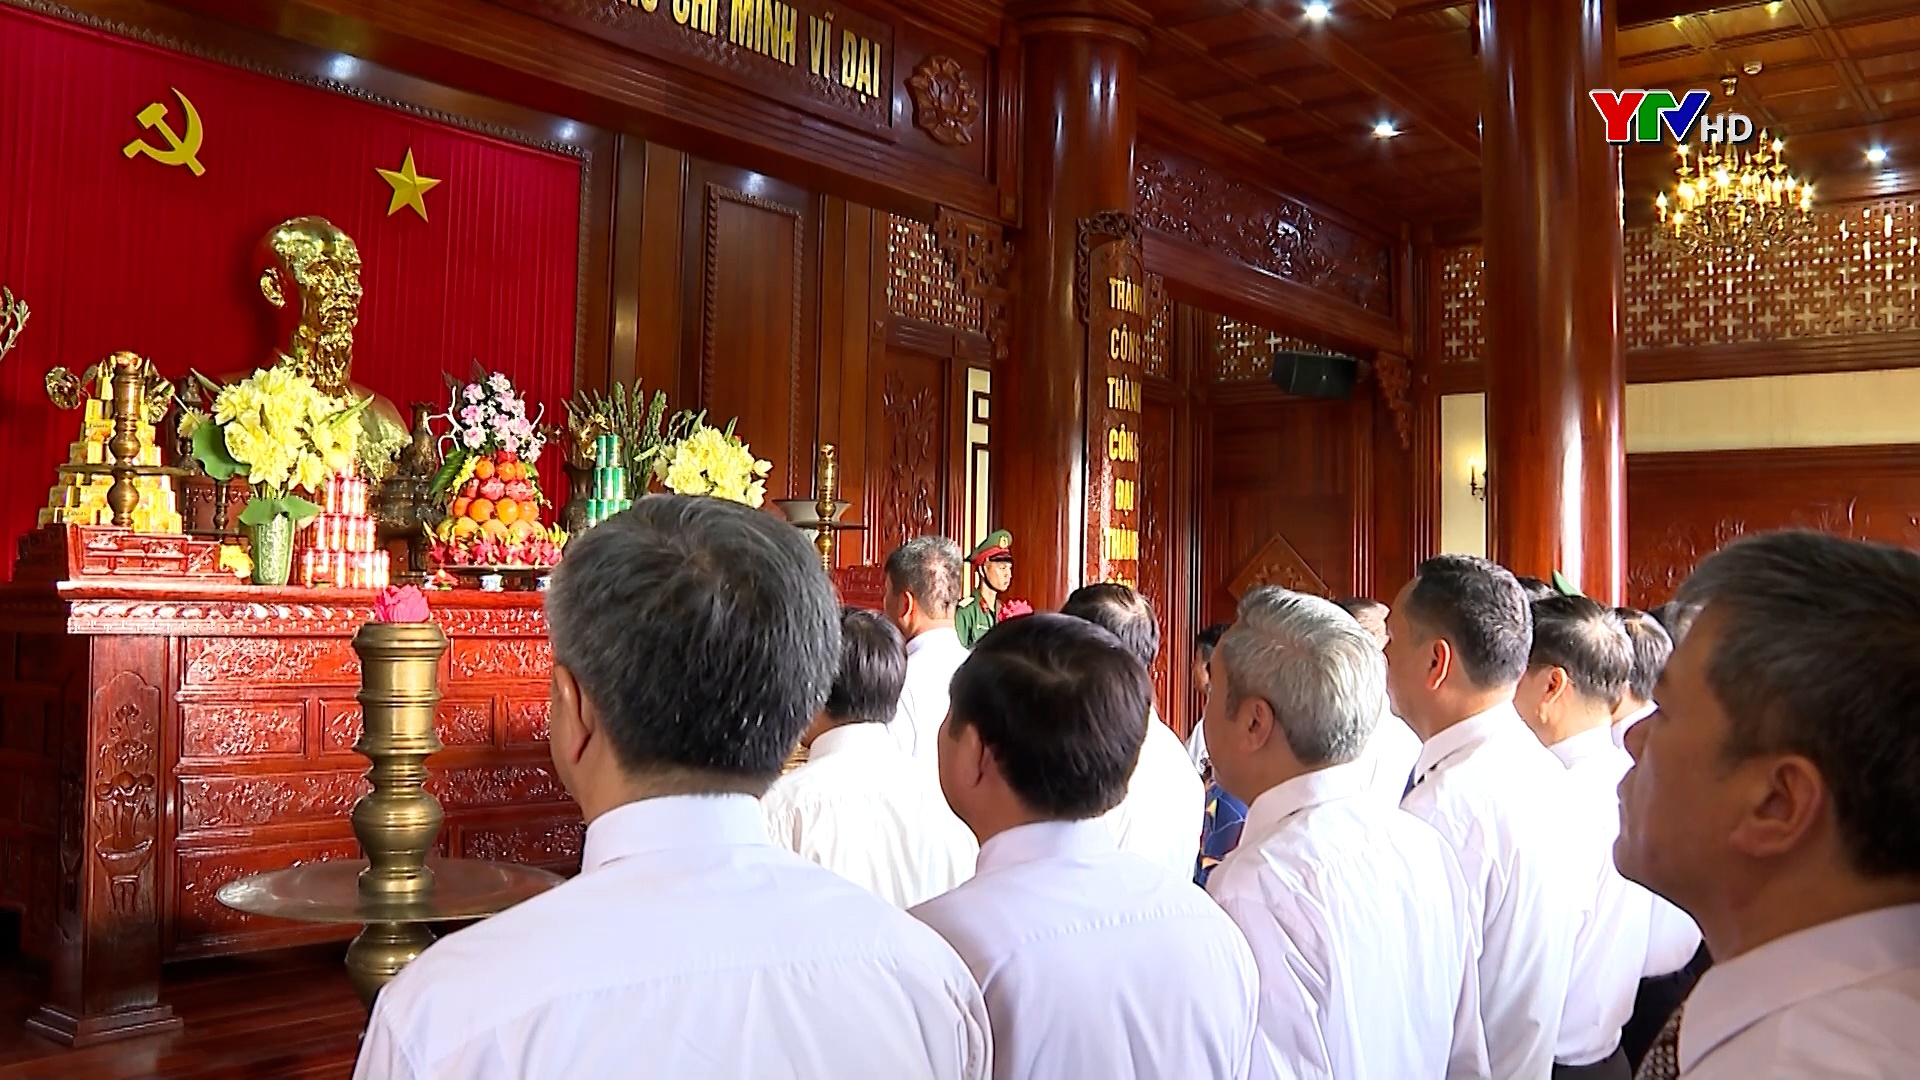 Đoàn đại biểu tỉnh Yên Bái dâng hương tưởng niệm Chủ tịch Hồ Chí Minh